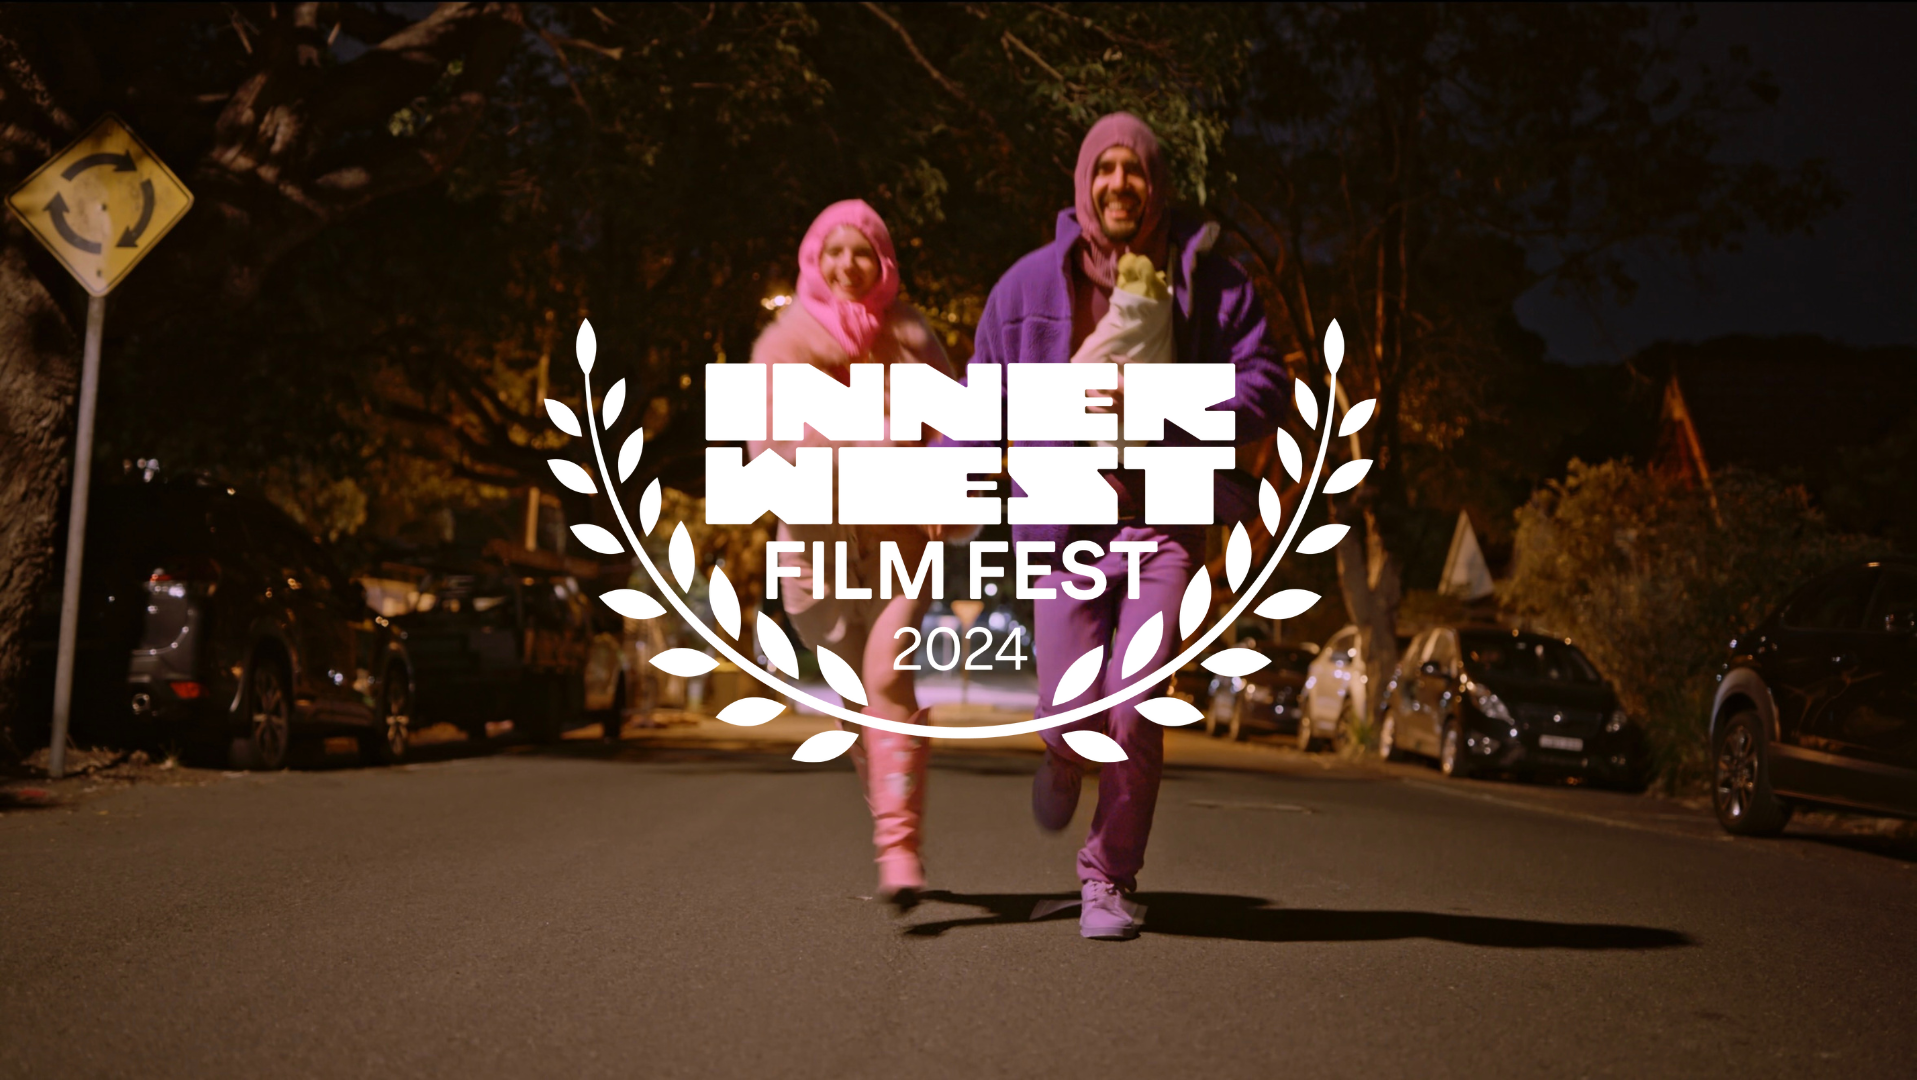 Inner West Film Fest 1 5.png